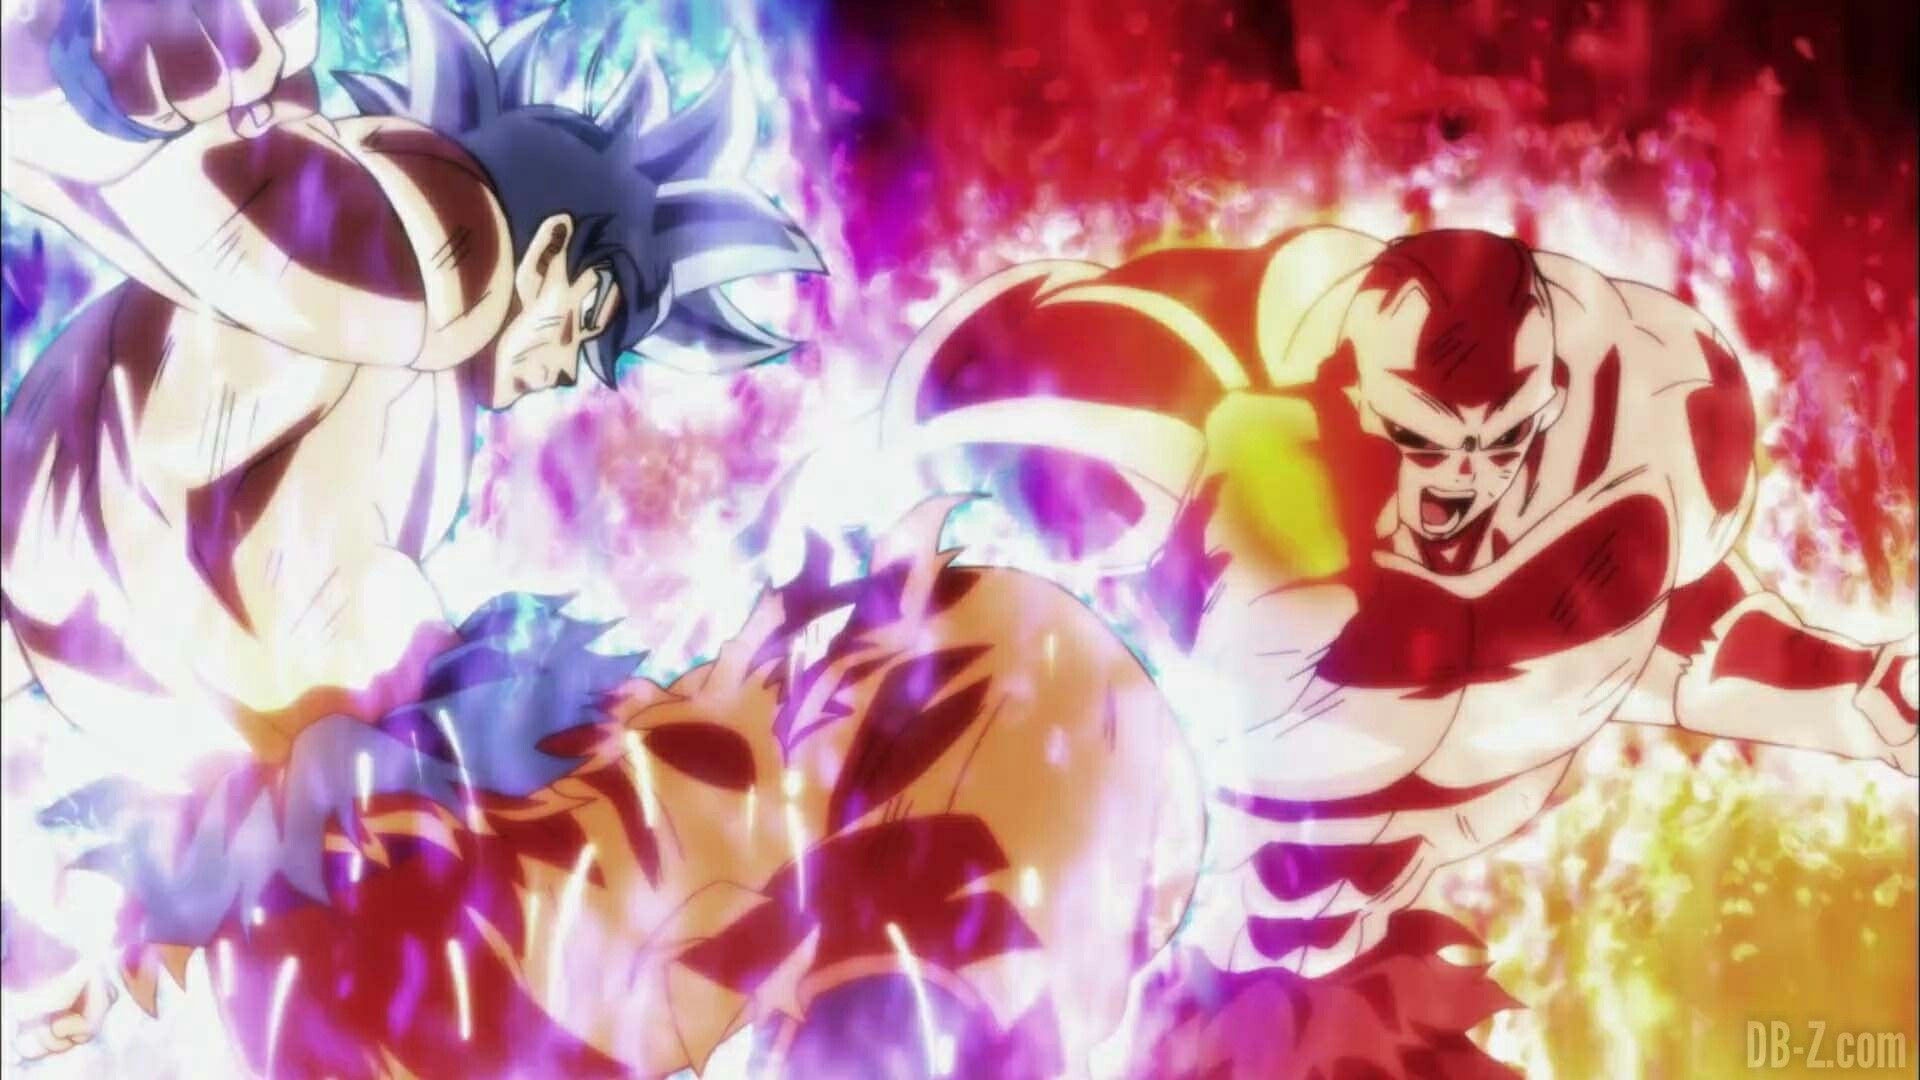 Goku vs Jiren Realistic Wallpapers.